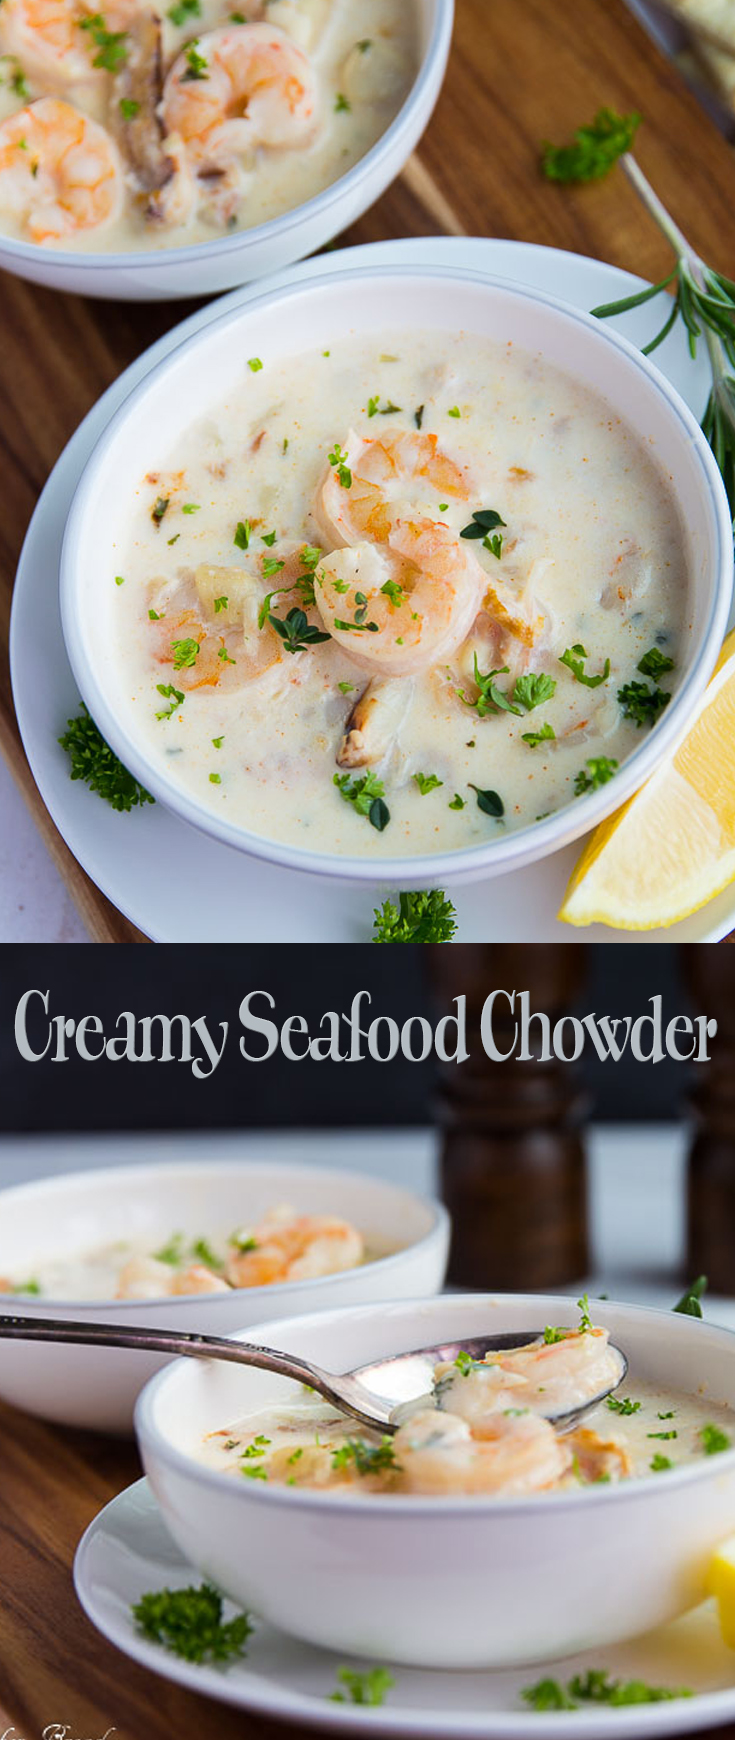 Creamy Seafood Chowder r1